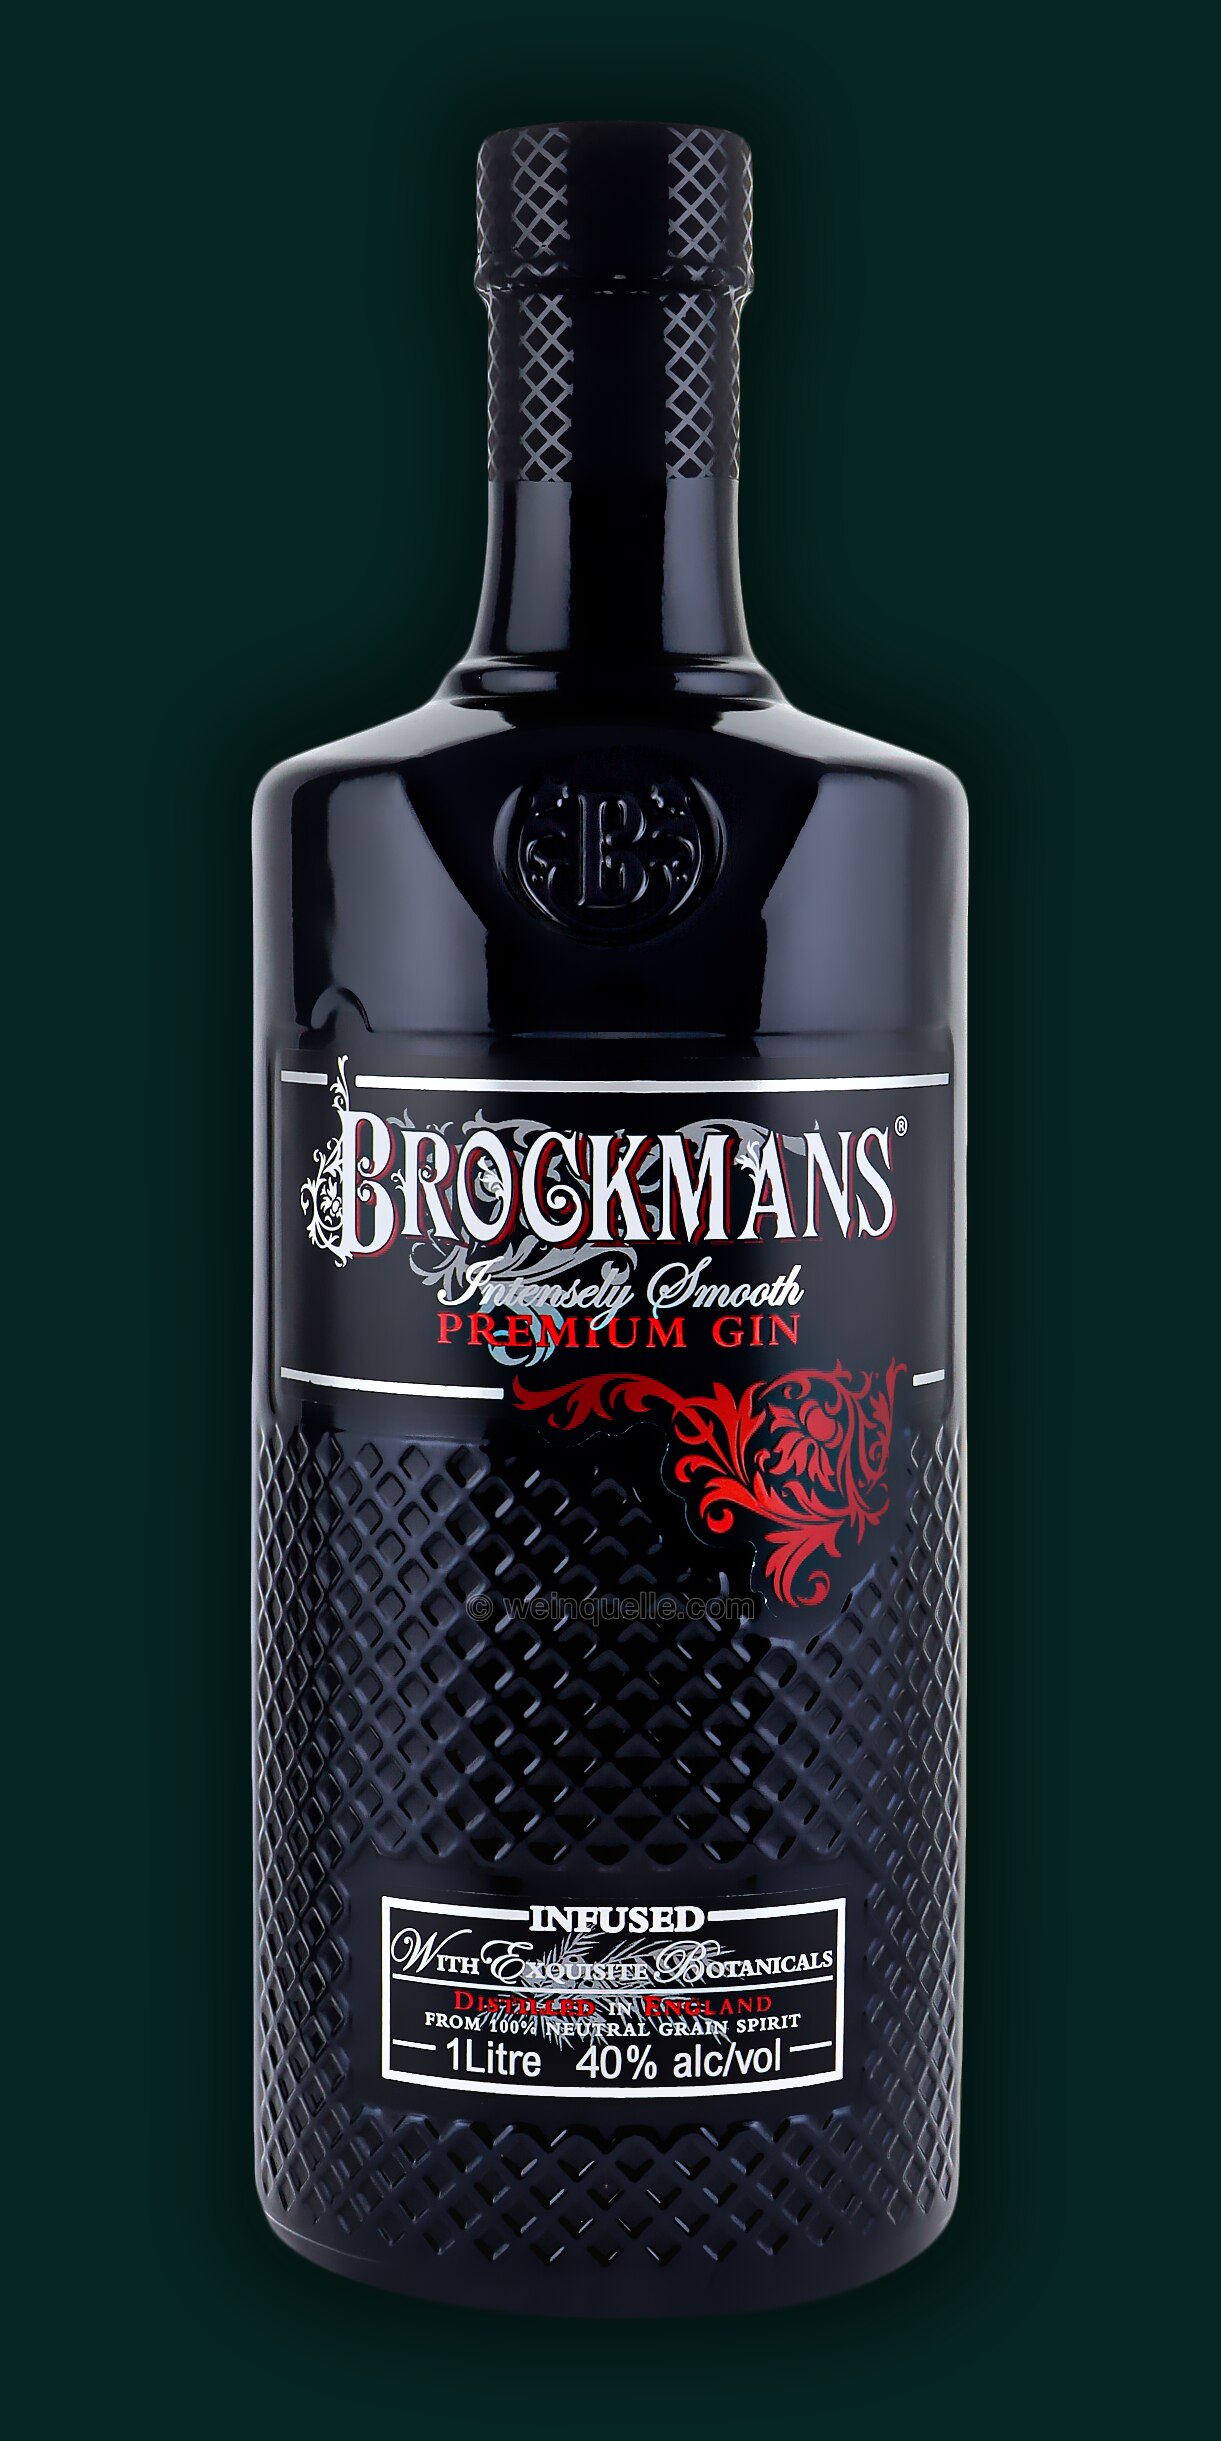 Liter, 39,95 € Gin Lühmann Weinquelle 1,00 Brockmans -